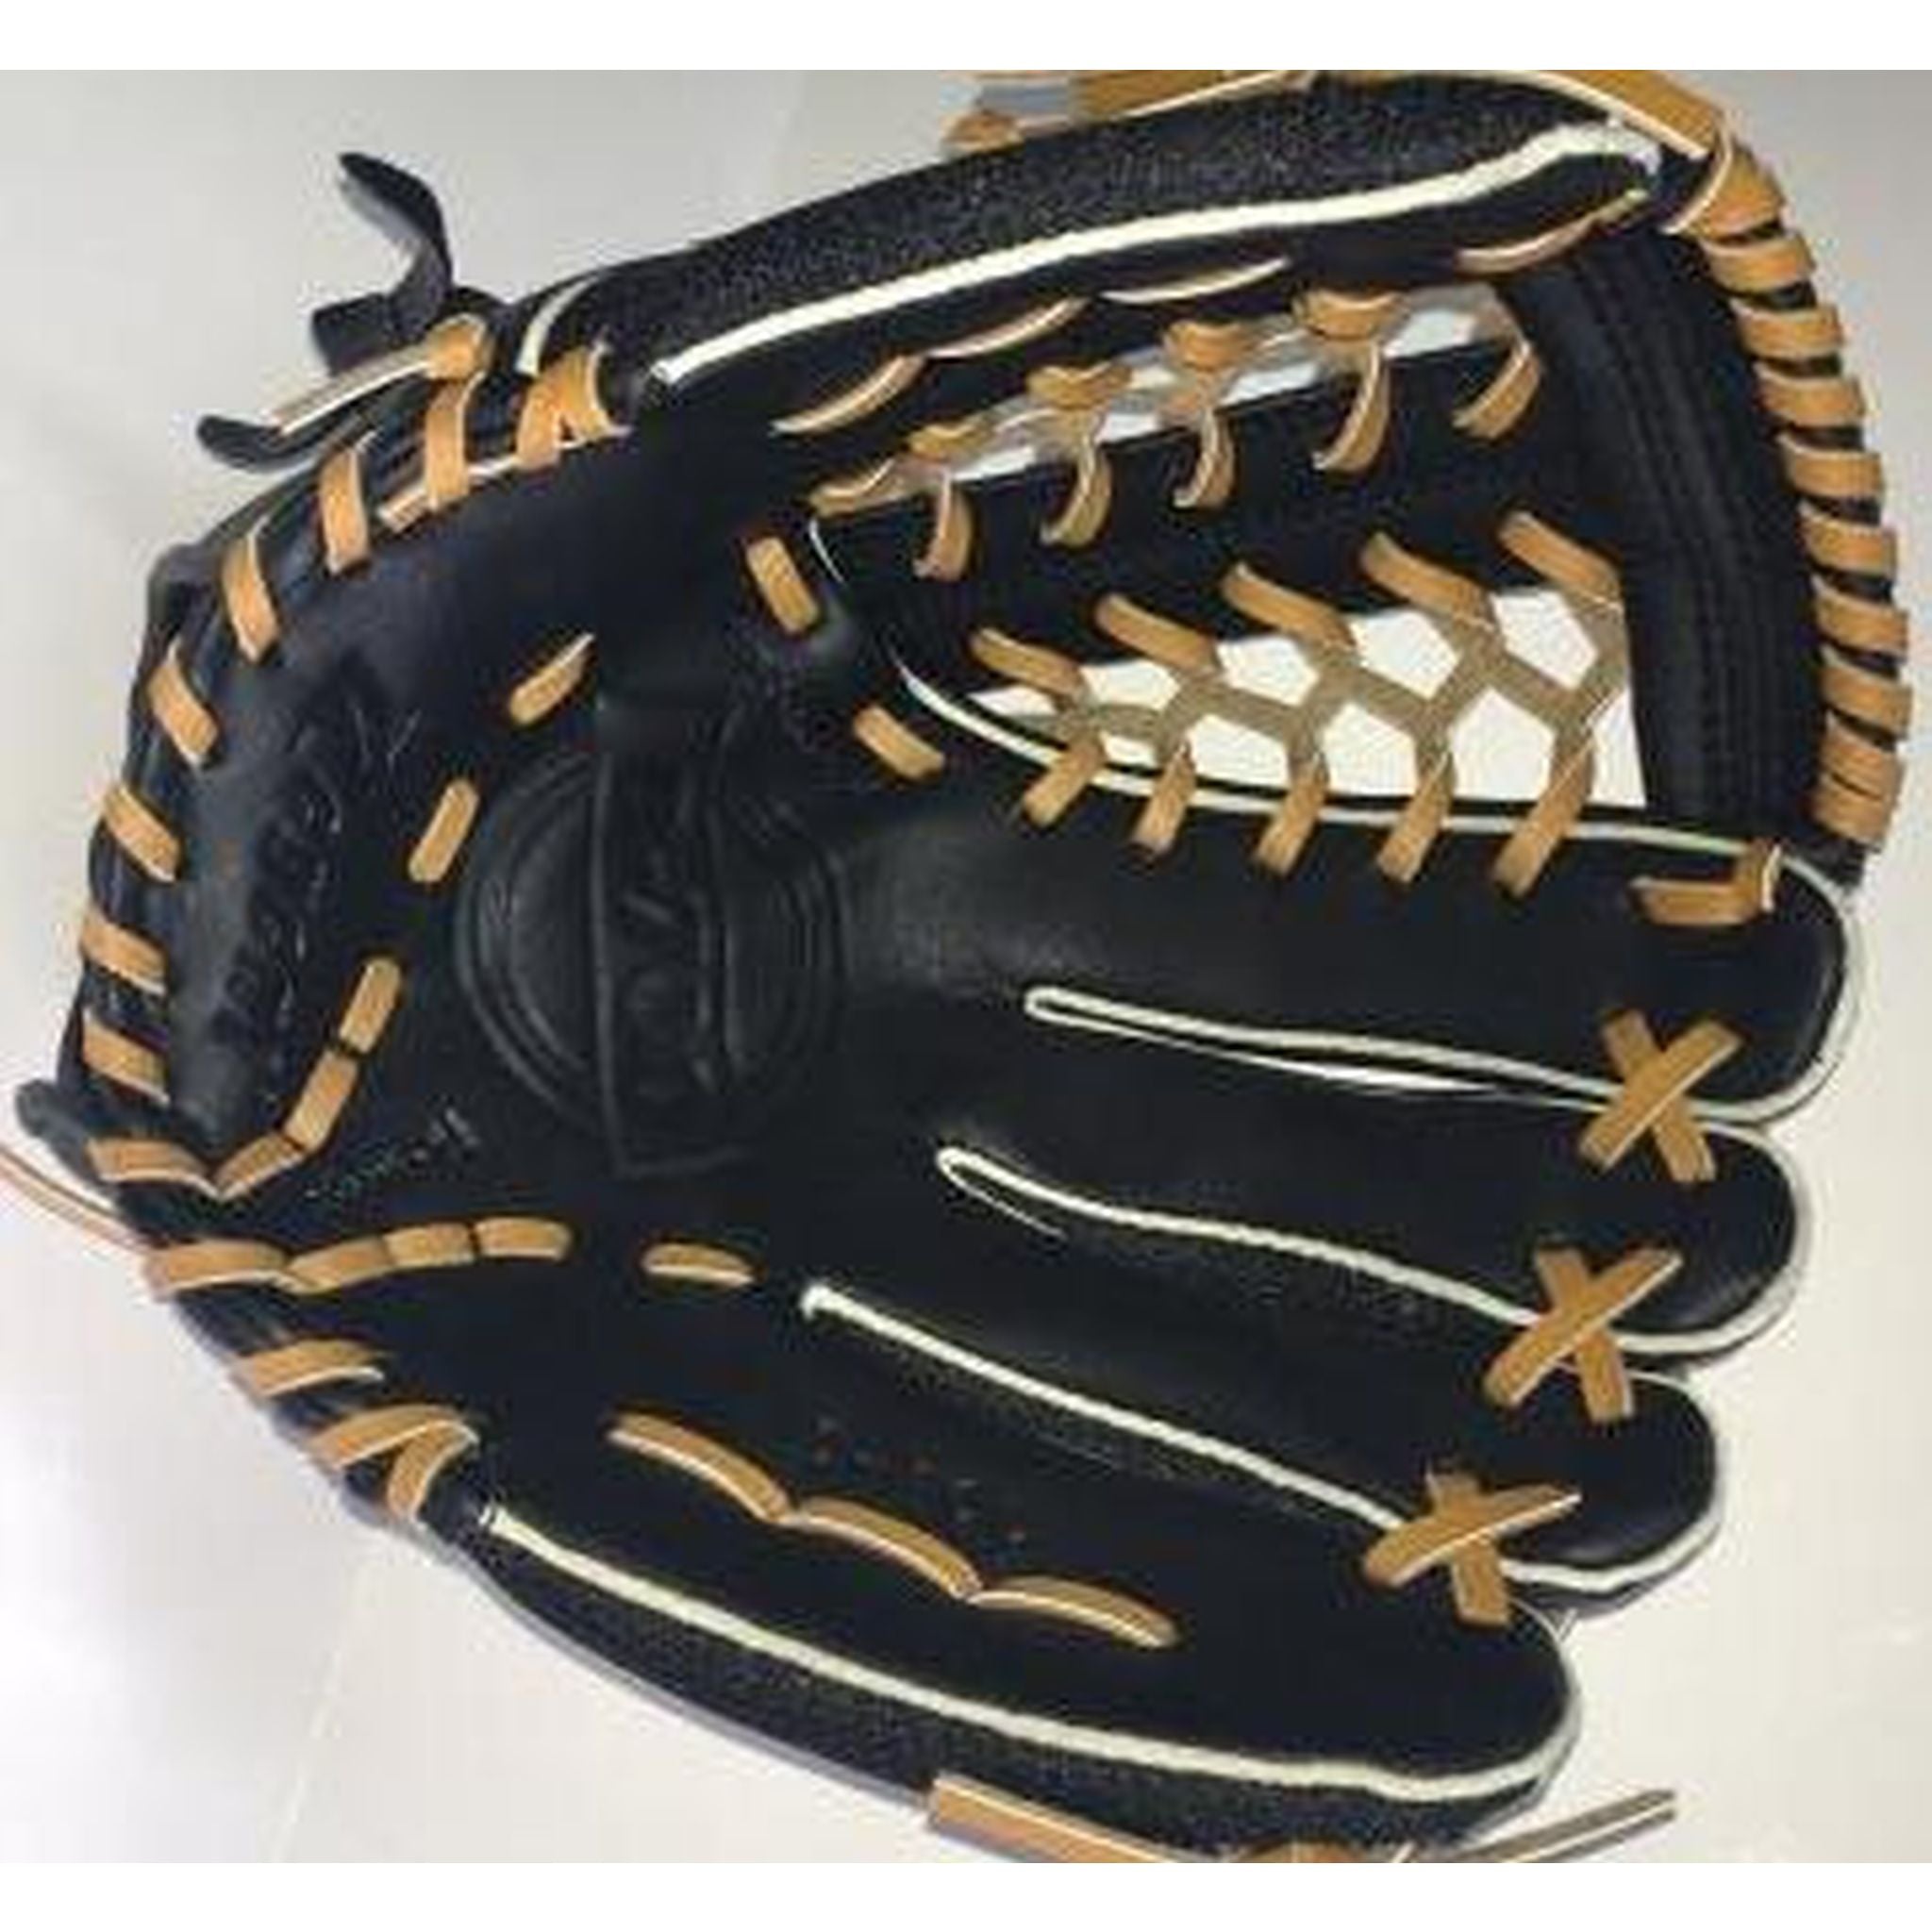 Regent D700 11.5-inch Baseball/Softball Glove